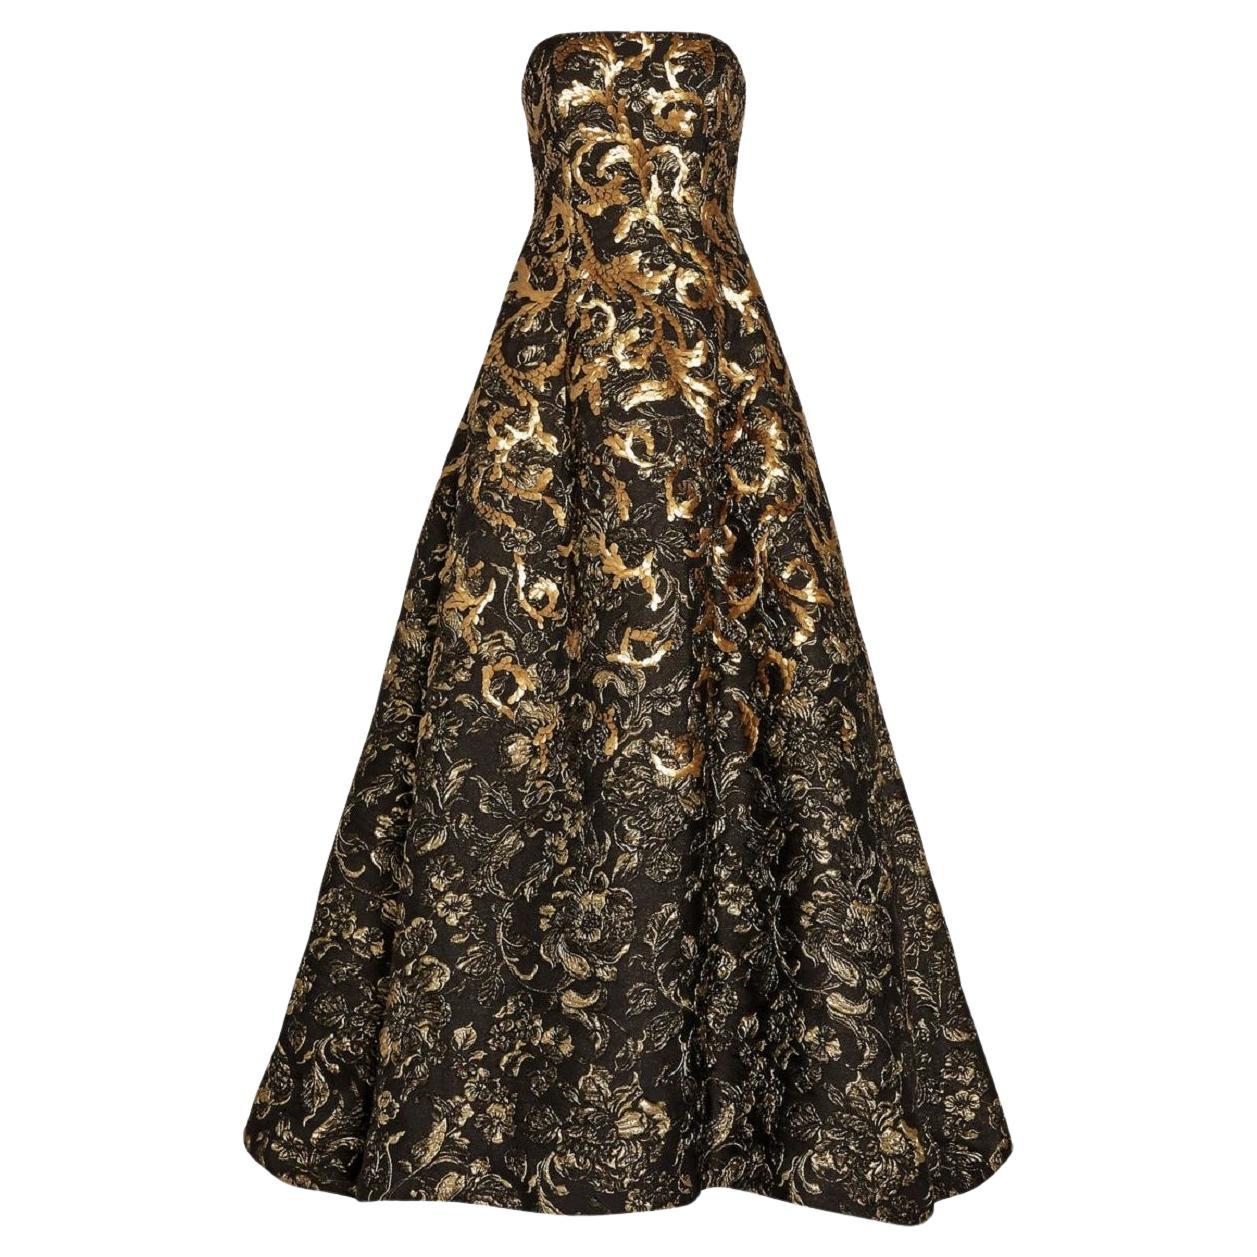 Oscar de la Renta FW 2014 Runway Museum Red Carpet Black Gold Gown Dress L / XL